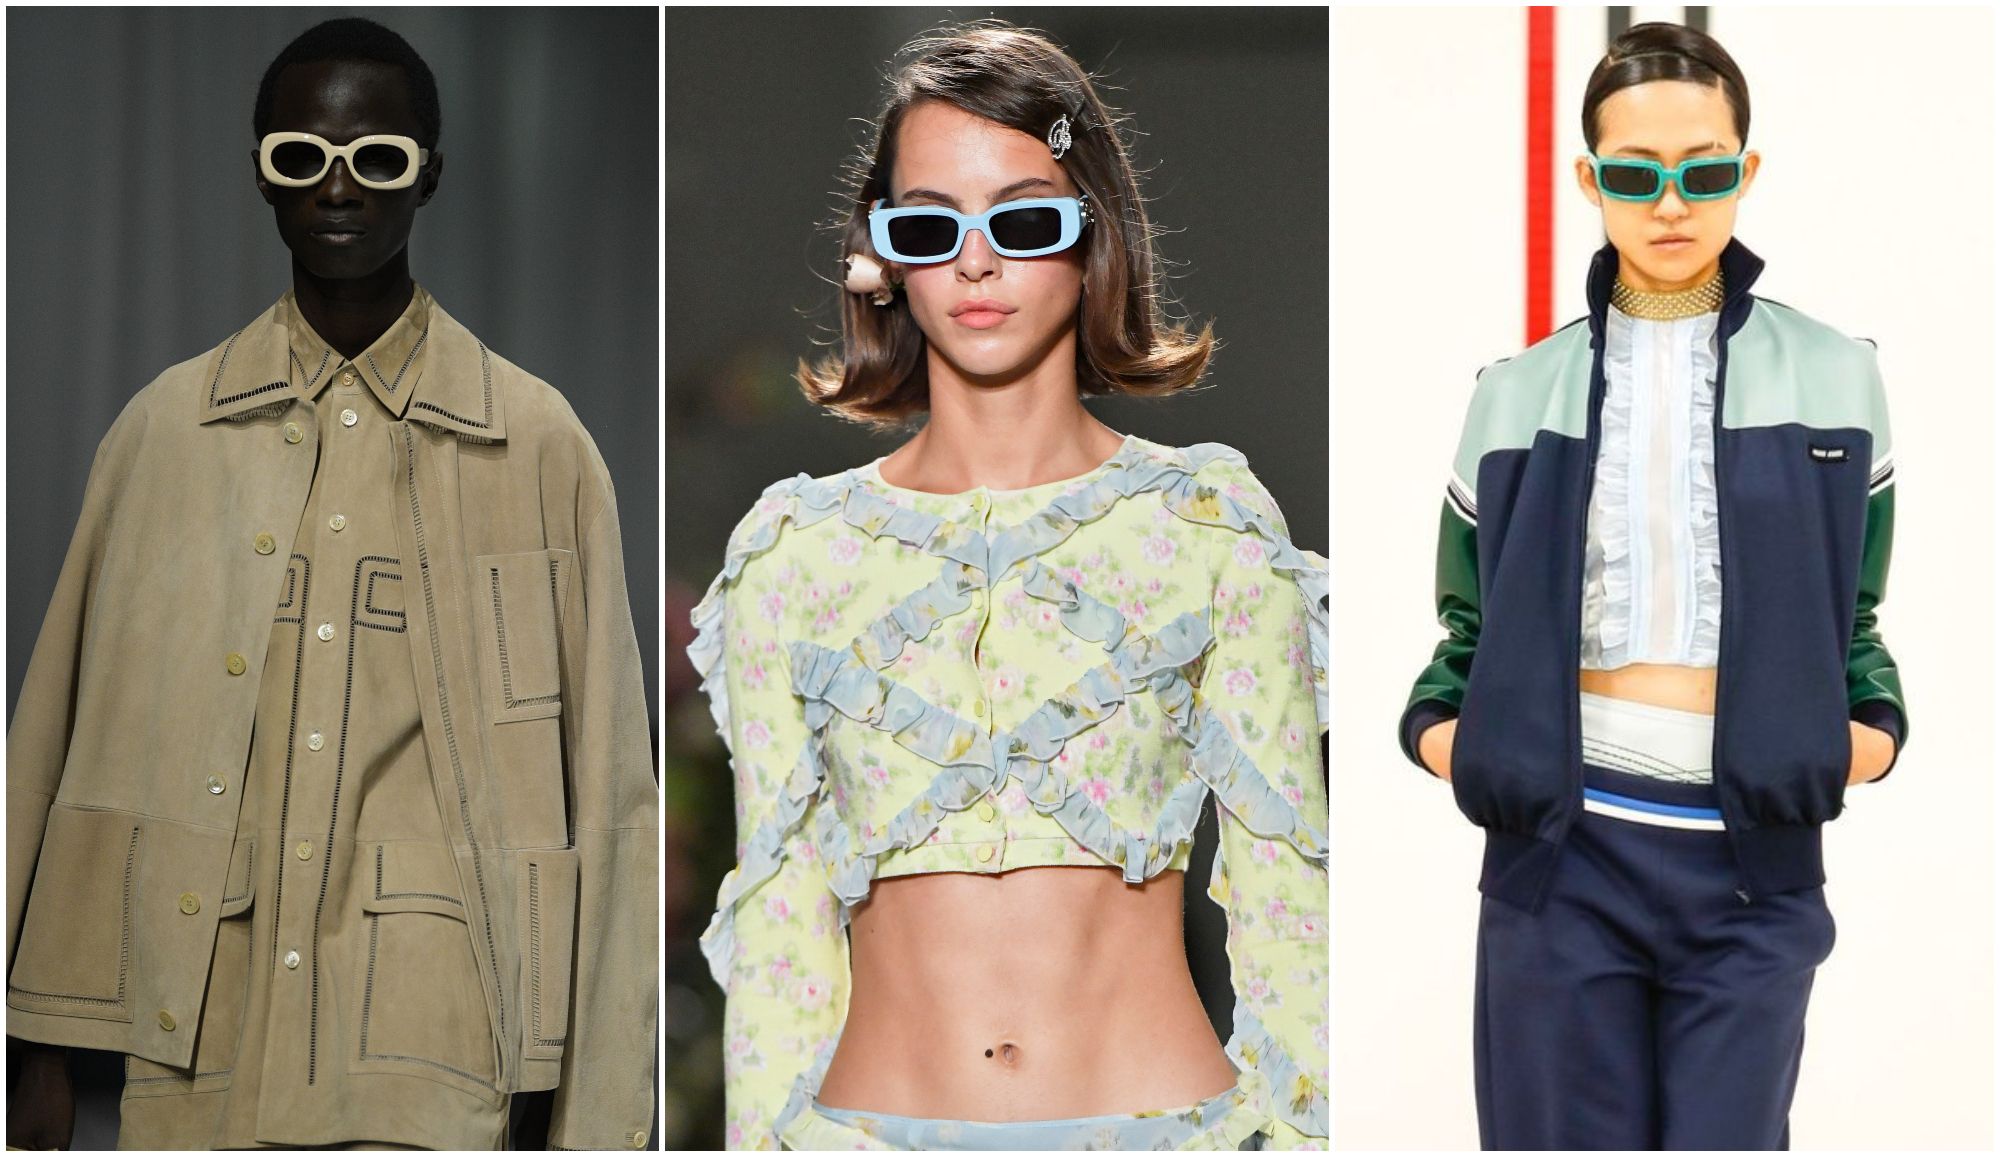 Las tendencias en Gafas de Sol para la Primavera – Verano 2015 -  Modaellos.com